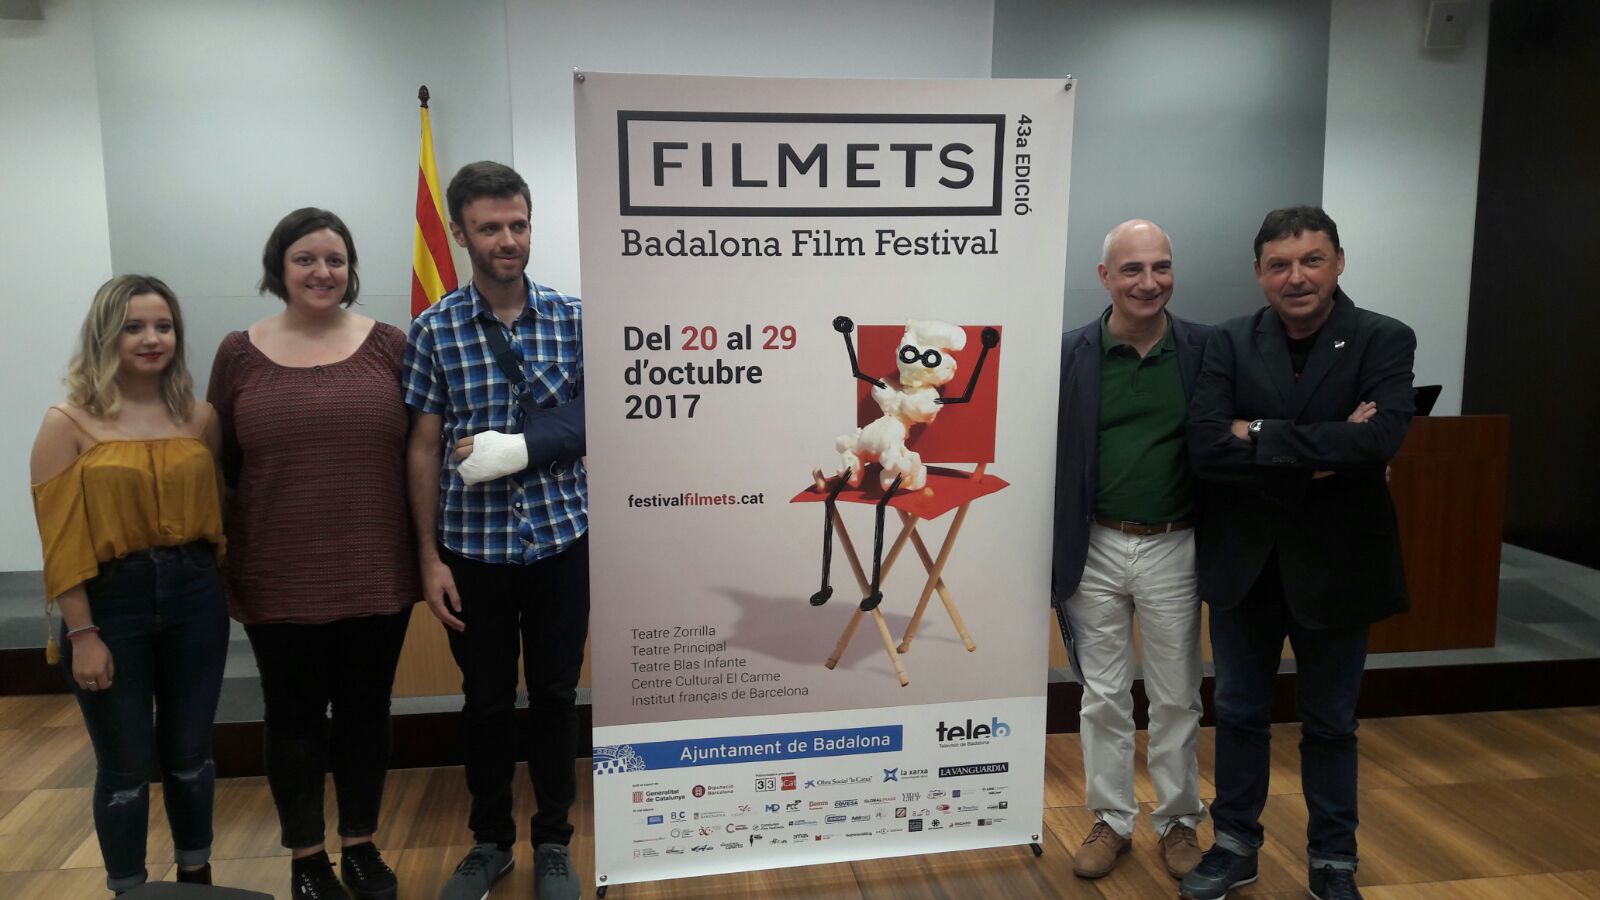 Del 19 al 28 d’Octubre nova edició del FILMETS Badalona Film Festival